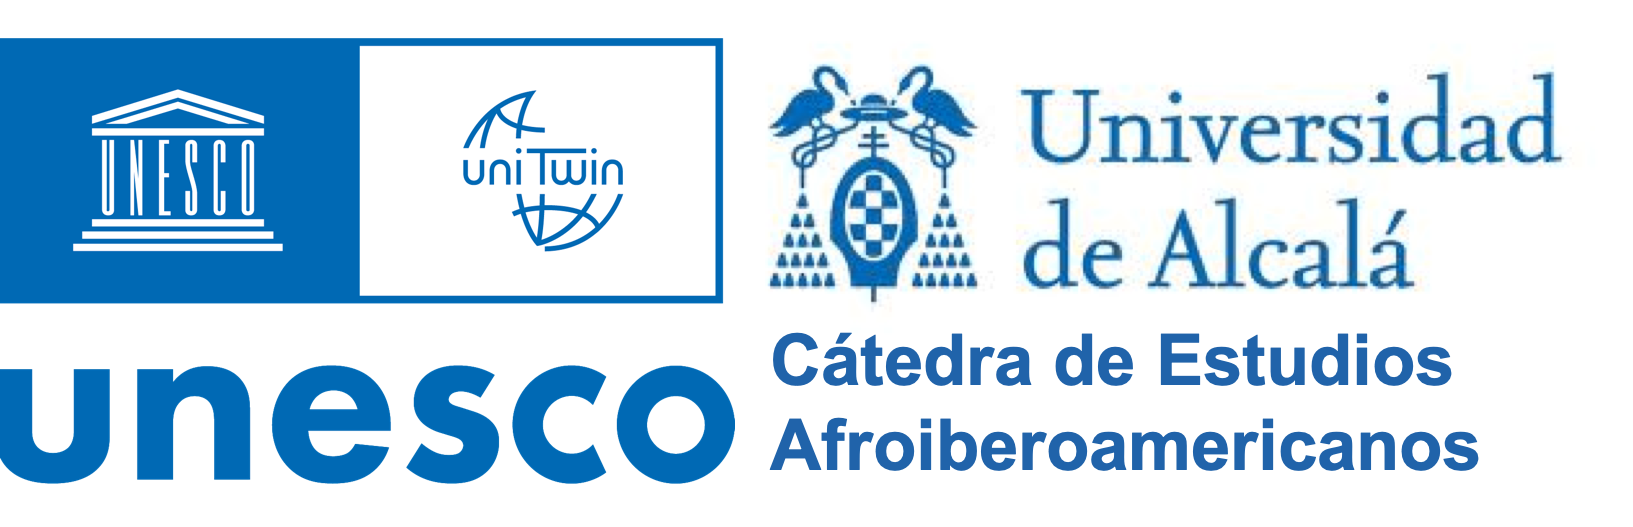 Logo de la cátedra UNESCO de estudios Afroiberoamericanos en la Universidad de Alcalá